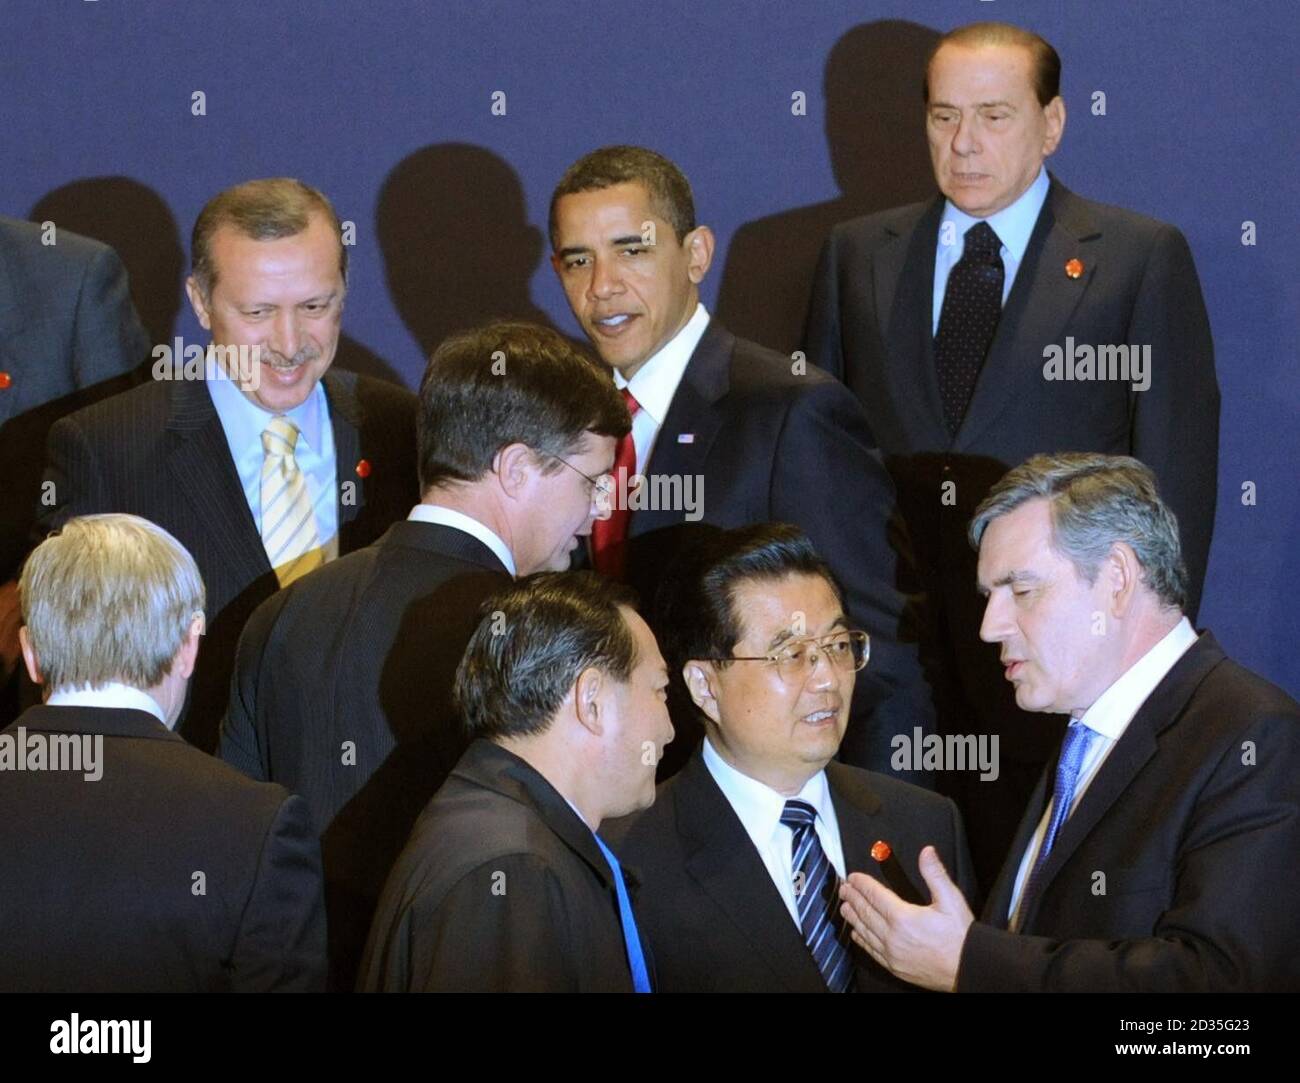 Premierminister Gordon Brown spricht mit dem chinesischen Präsidenten Hu Jintao, der heute zu Beginn des G20-Gipfels in London für ein Gruppenfoto posiert. Stockfoto